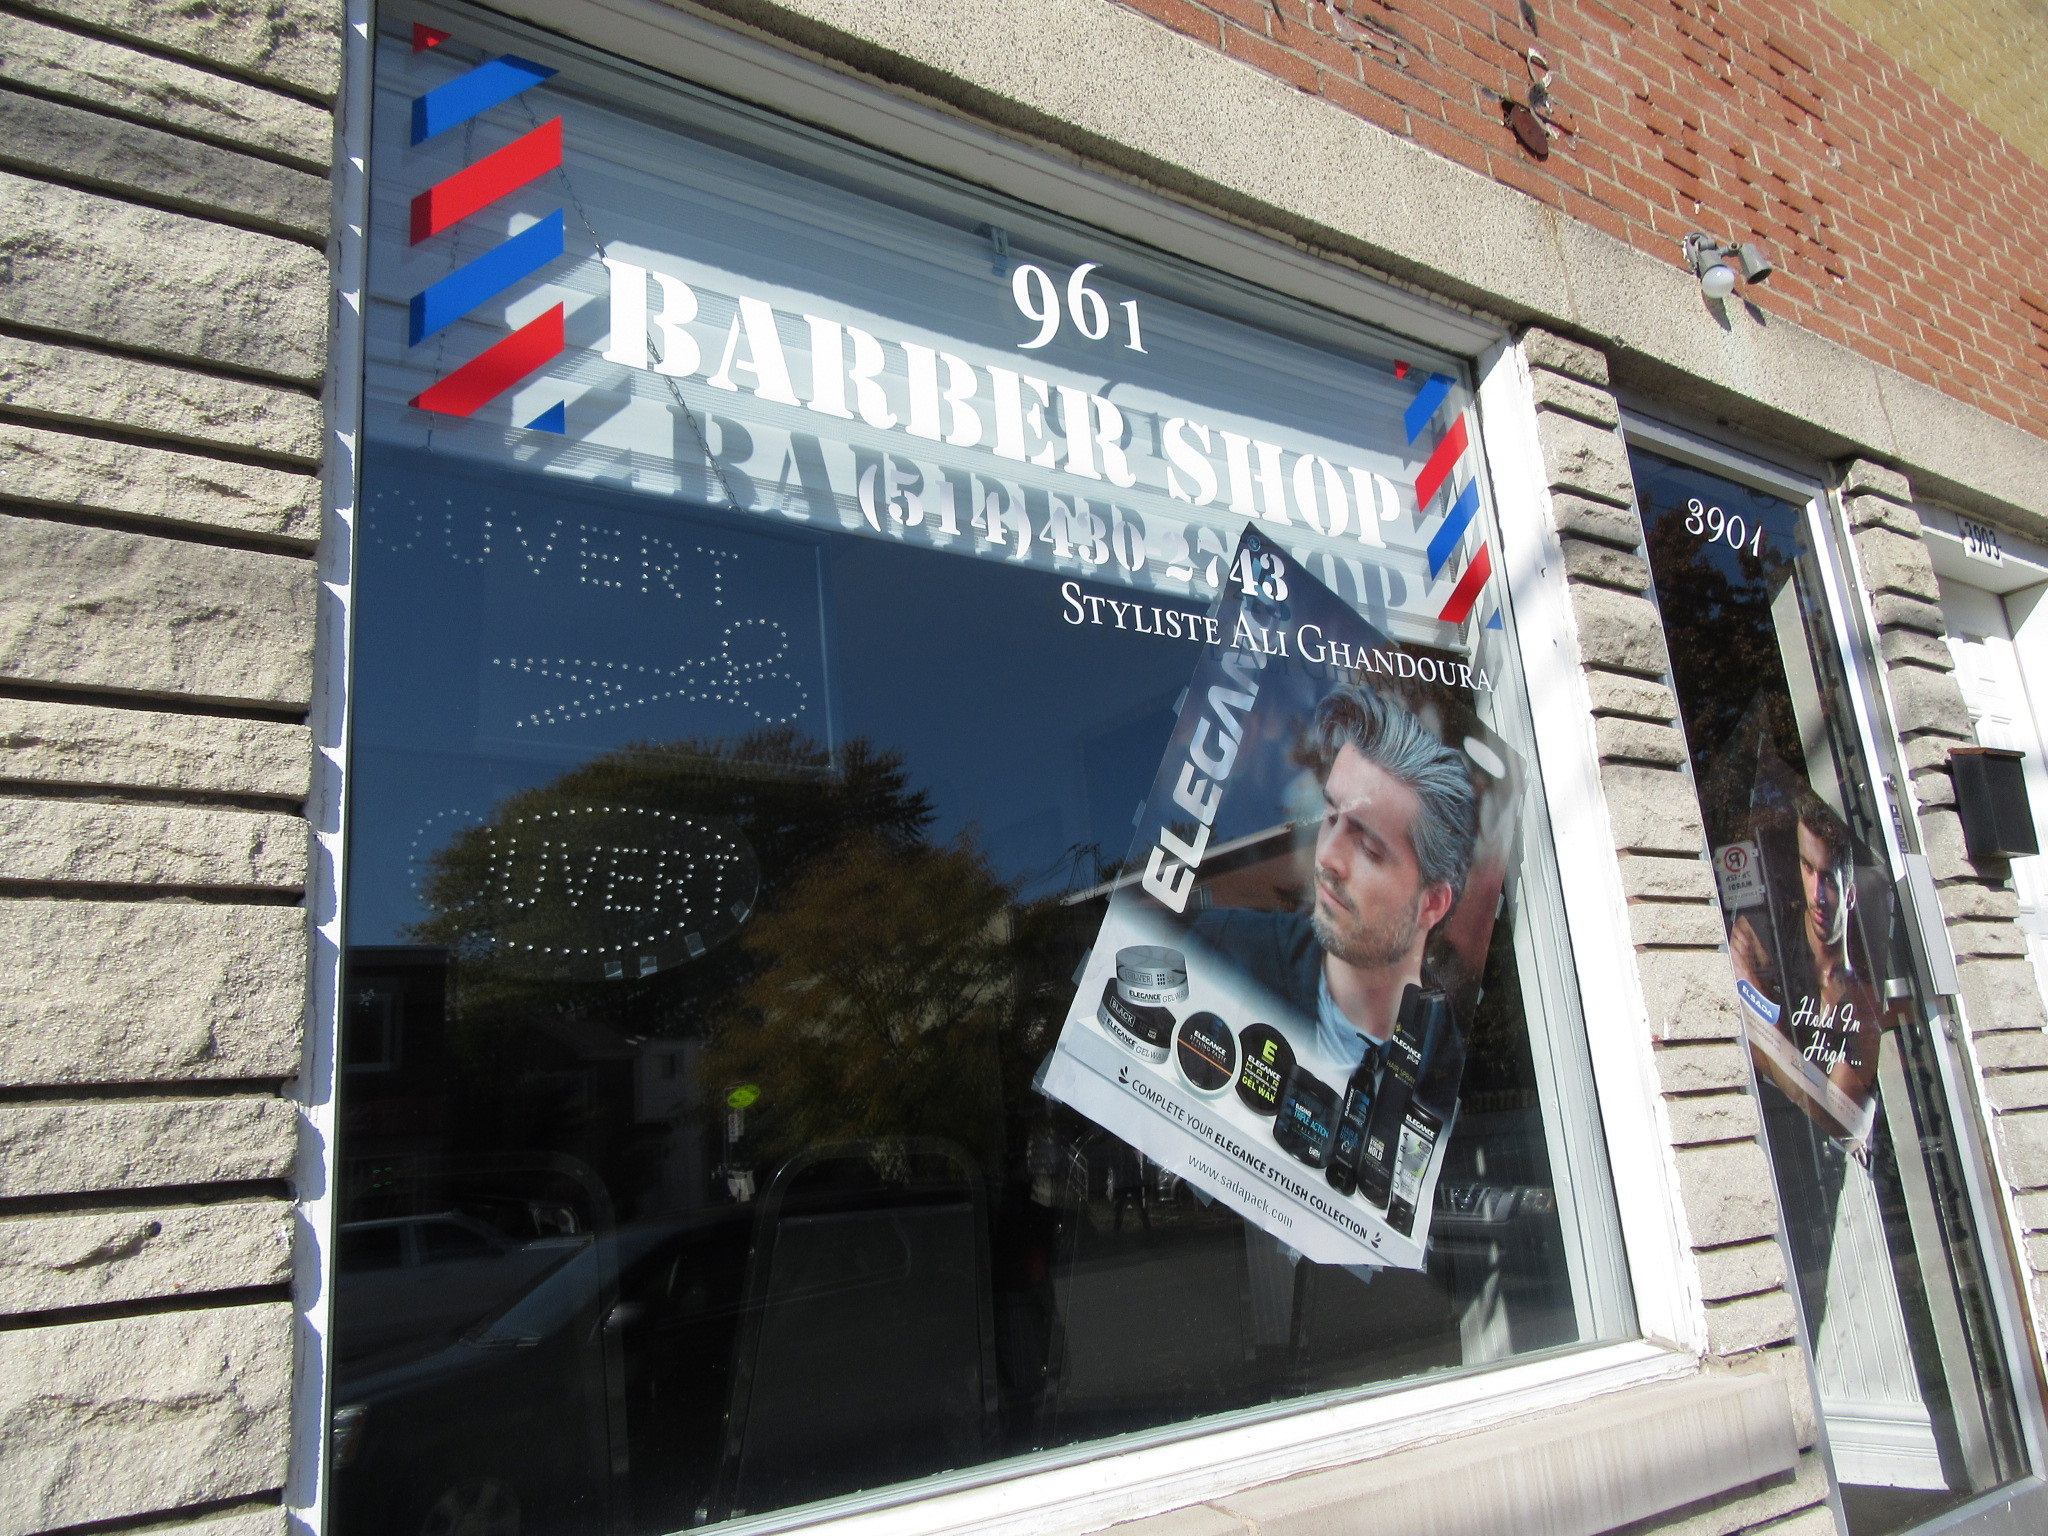 961 Barber Shop